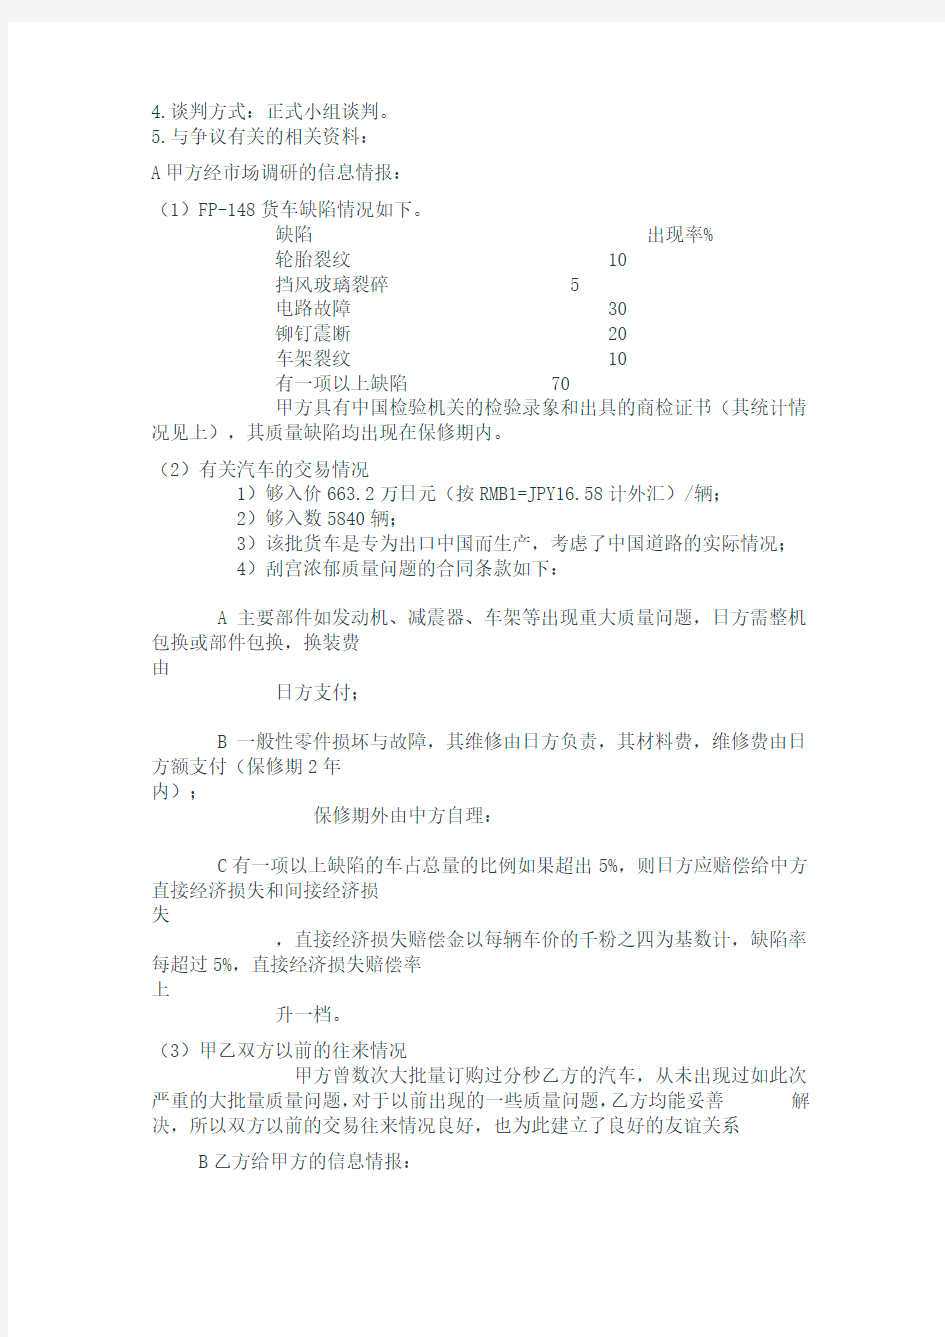 商务谈判策划书(中国进出口贸易公司与三菱重工)